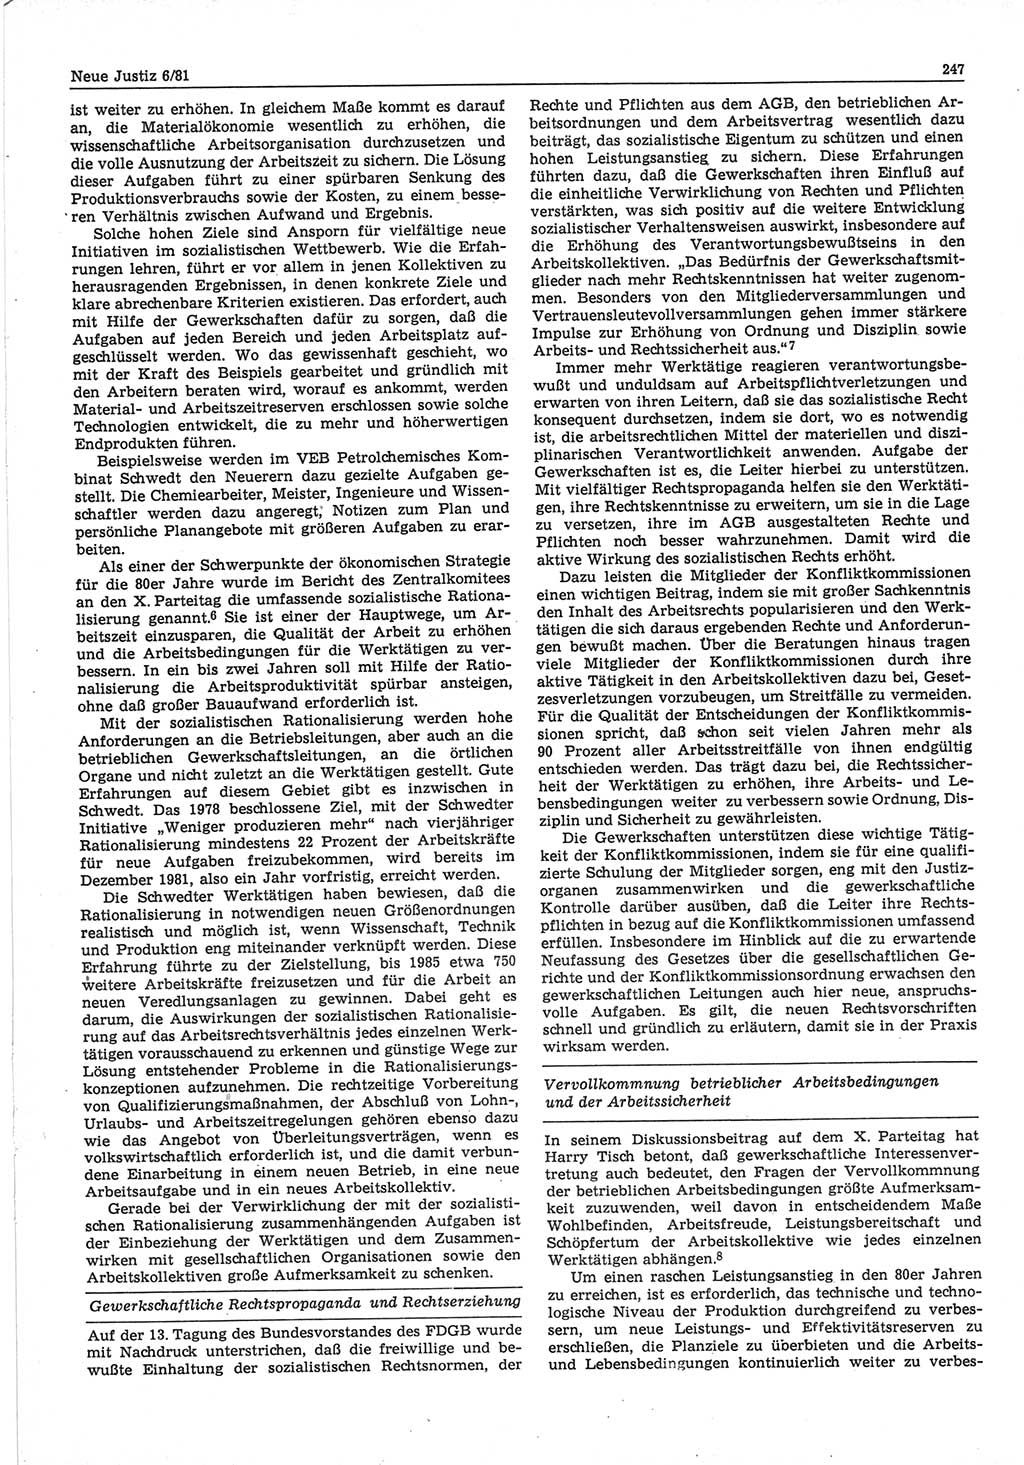 Neue Justiz (NJ), Zeitschrift für sozialistisches Recht und Gesetzlichkeit [Deutsche Demokratische Republik (DDR)], 35. Jahrgang 1981, Seite 247 (NJ DDR 1981, S. 247)